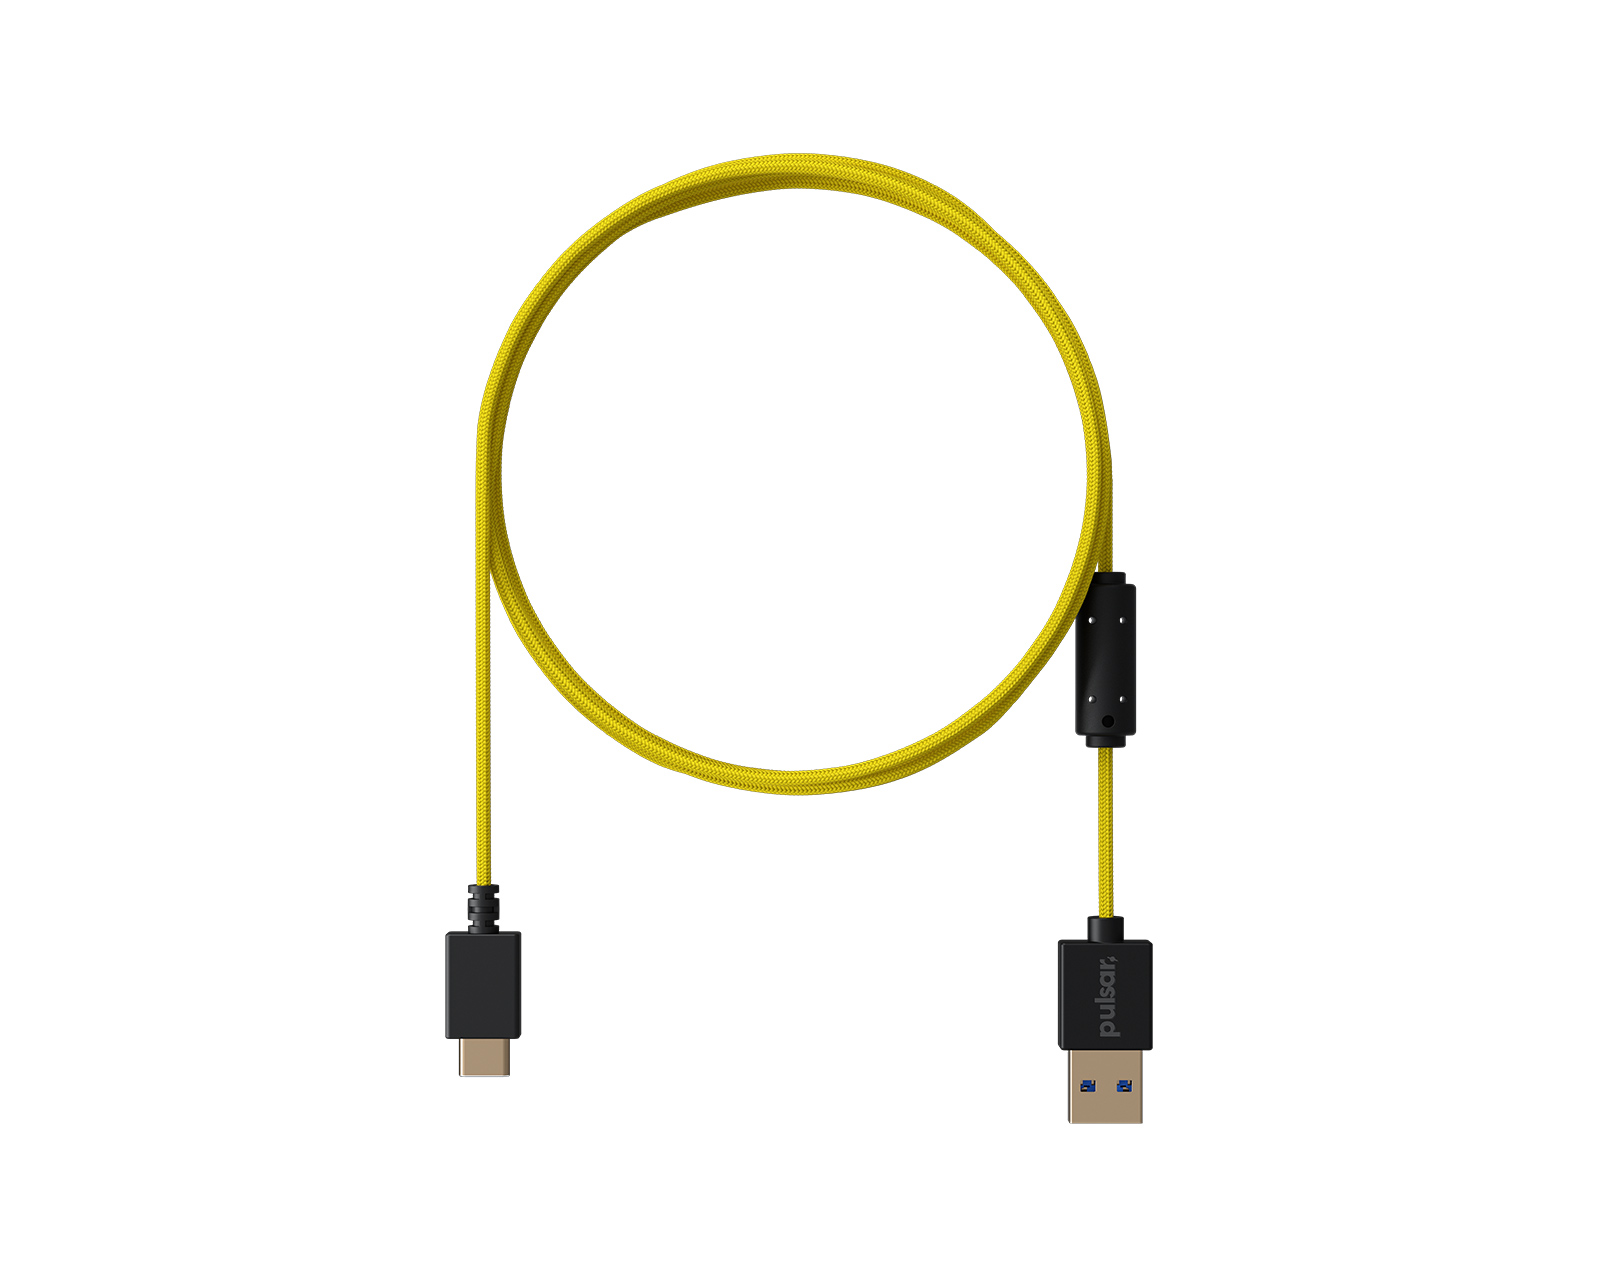 Pulsar USB-C Paracord - Yellow - MaxGaming.com